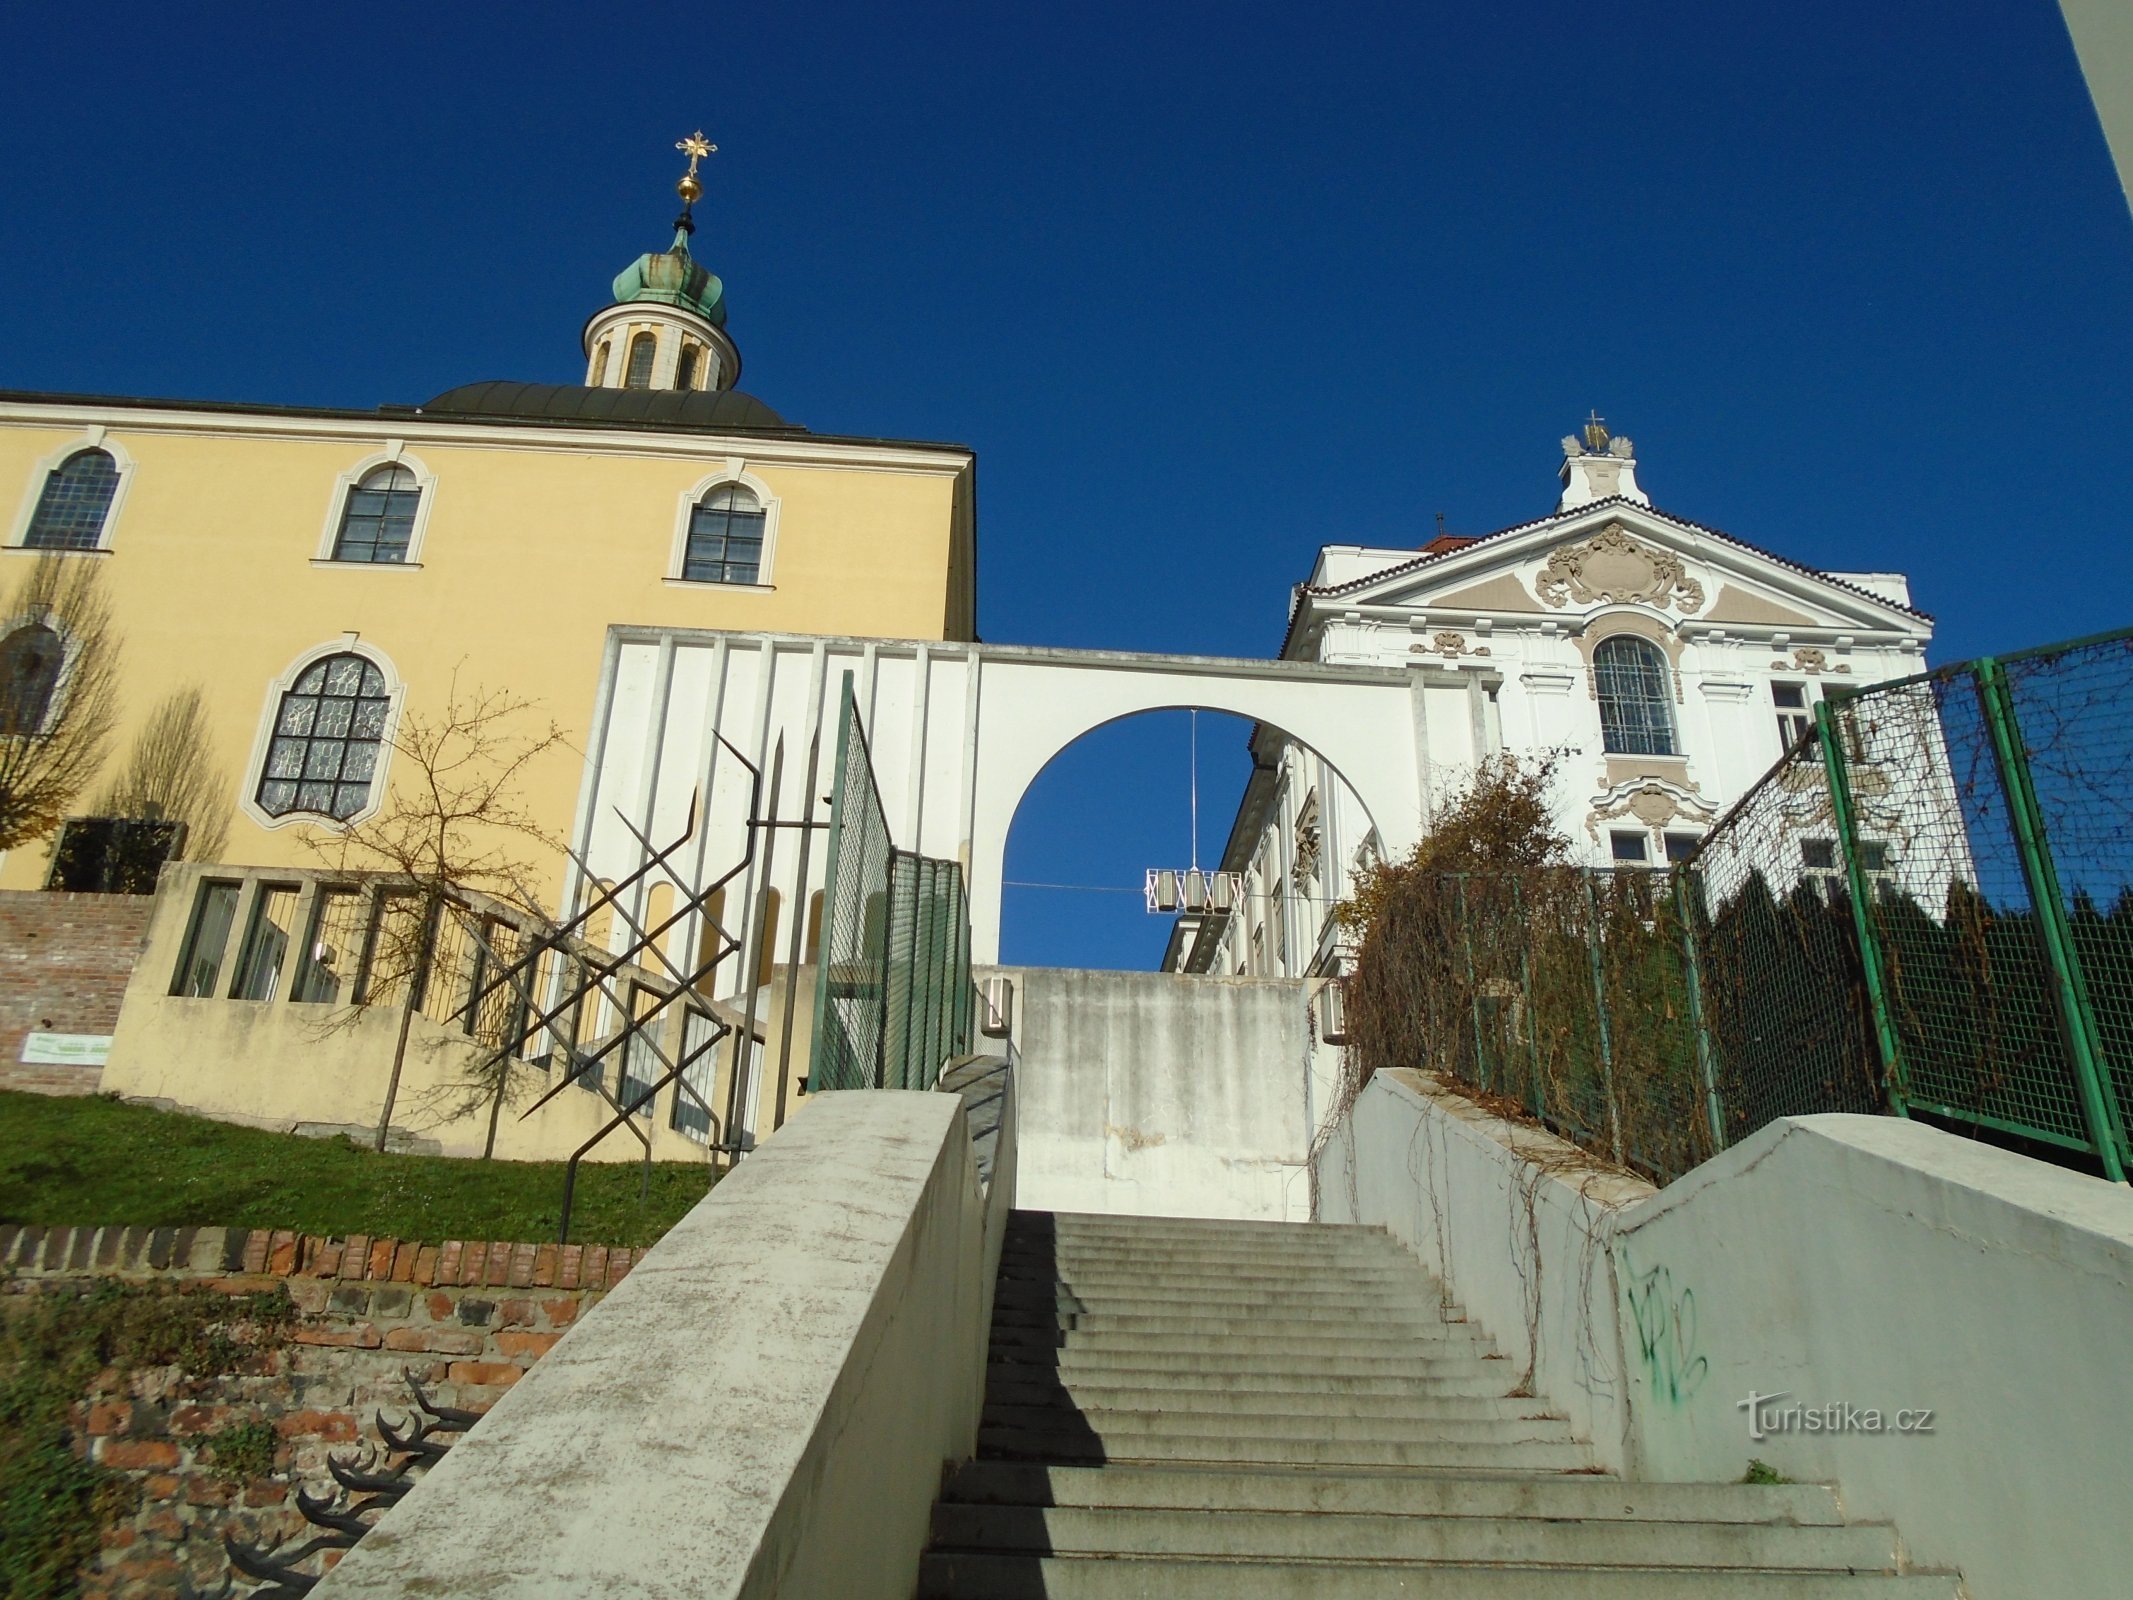 Escalier Na Kropáčka (Hradec Králové, 17.11.2018/XNUMX/XNUMX)